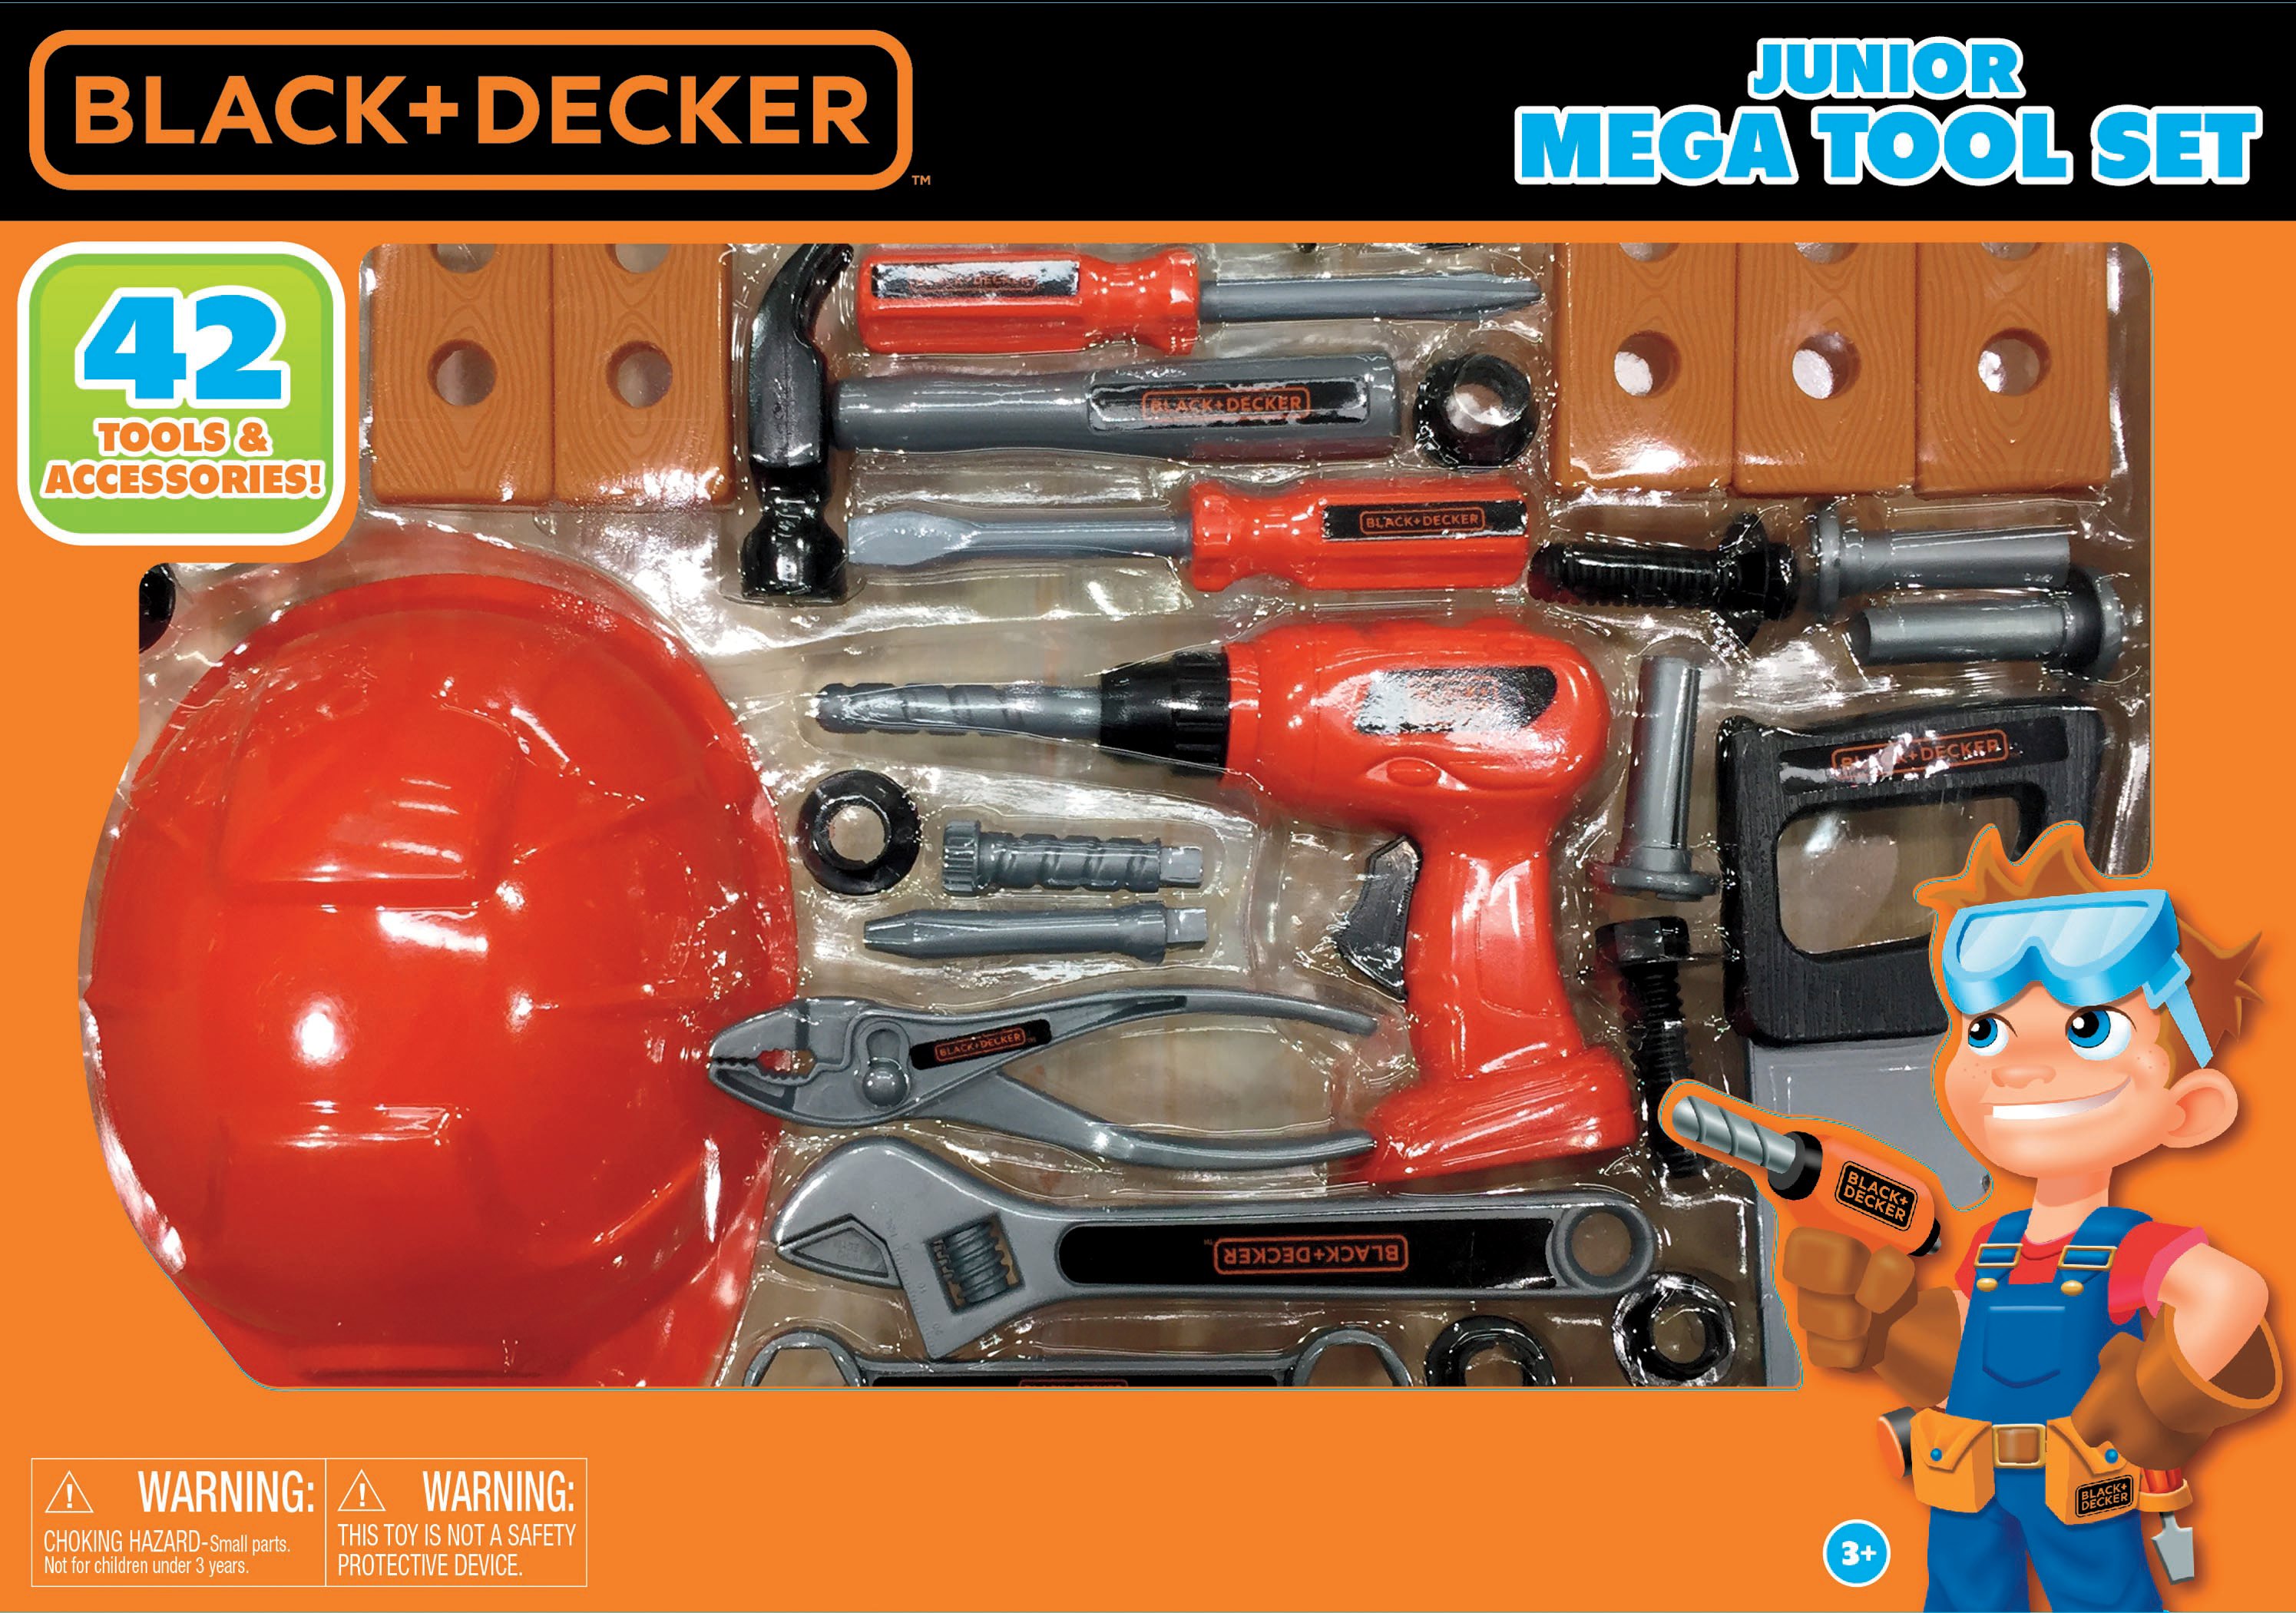 Black & Decker Jr. Mega Tool Set 